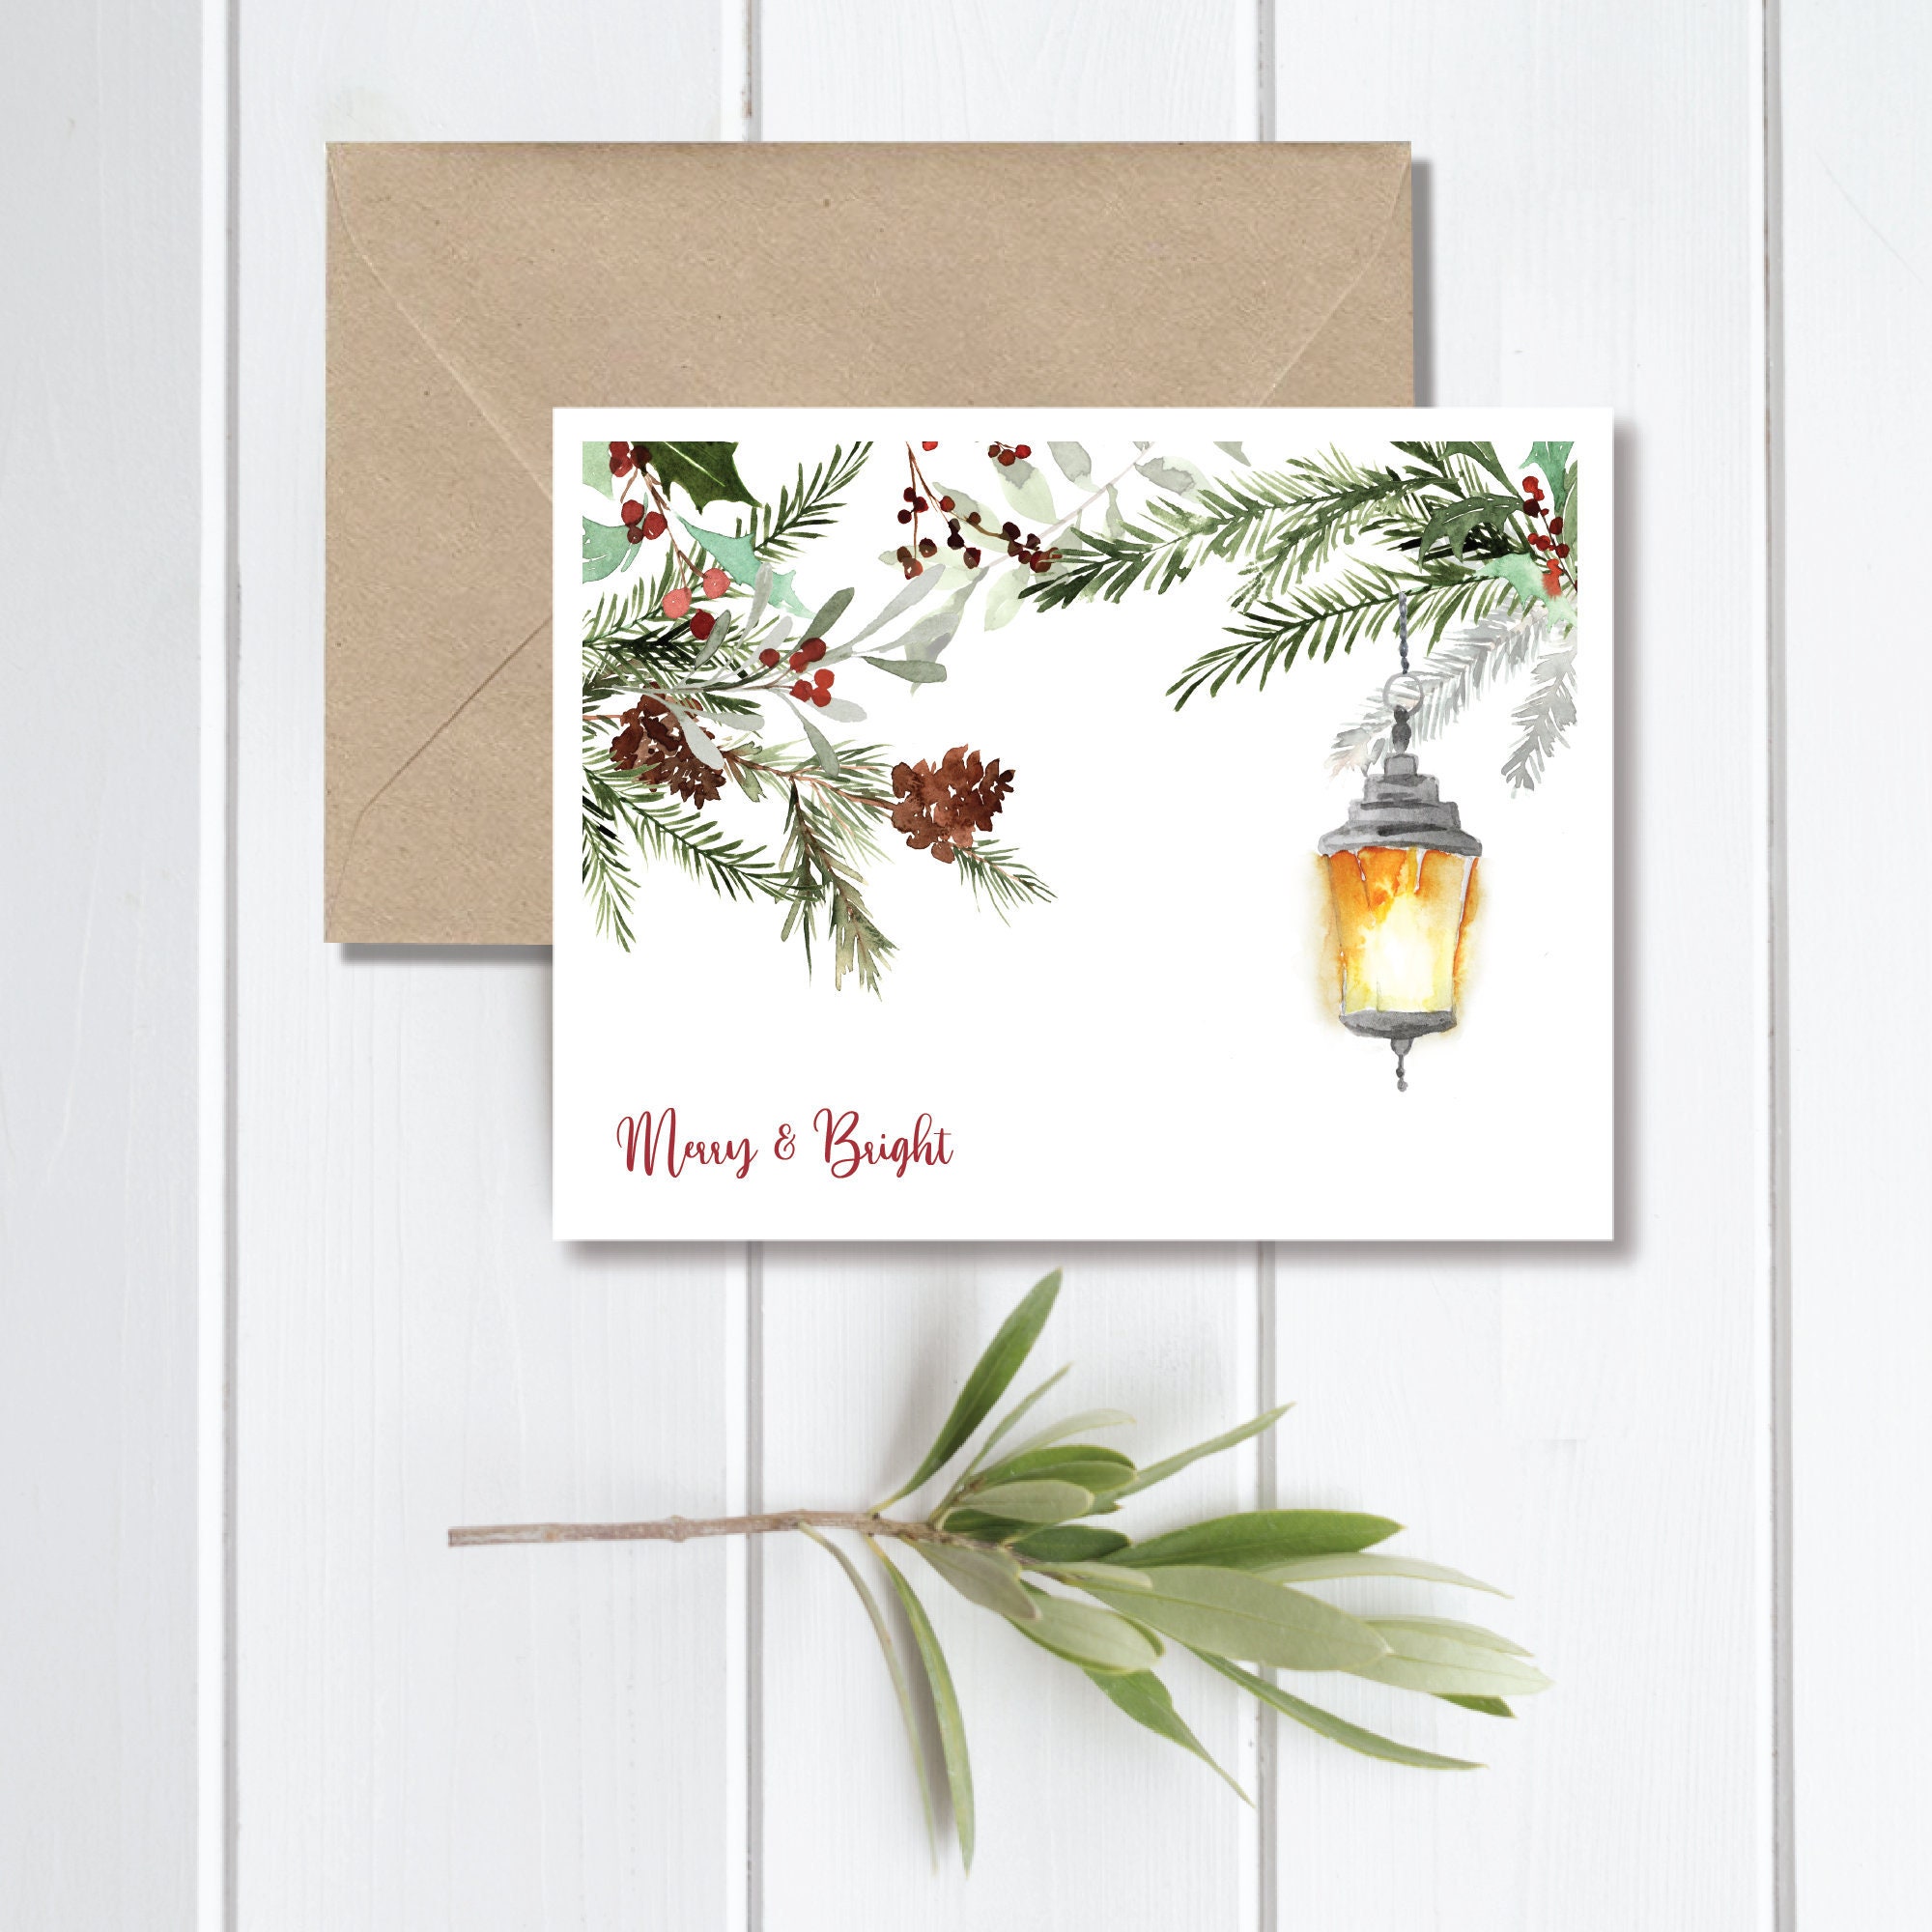 Christmas Card Album, Cover: Dove Gray Cotton